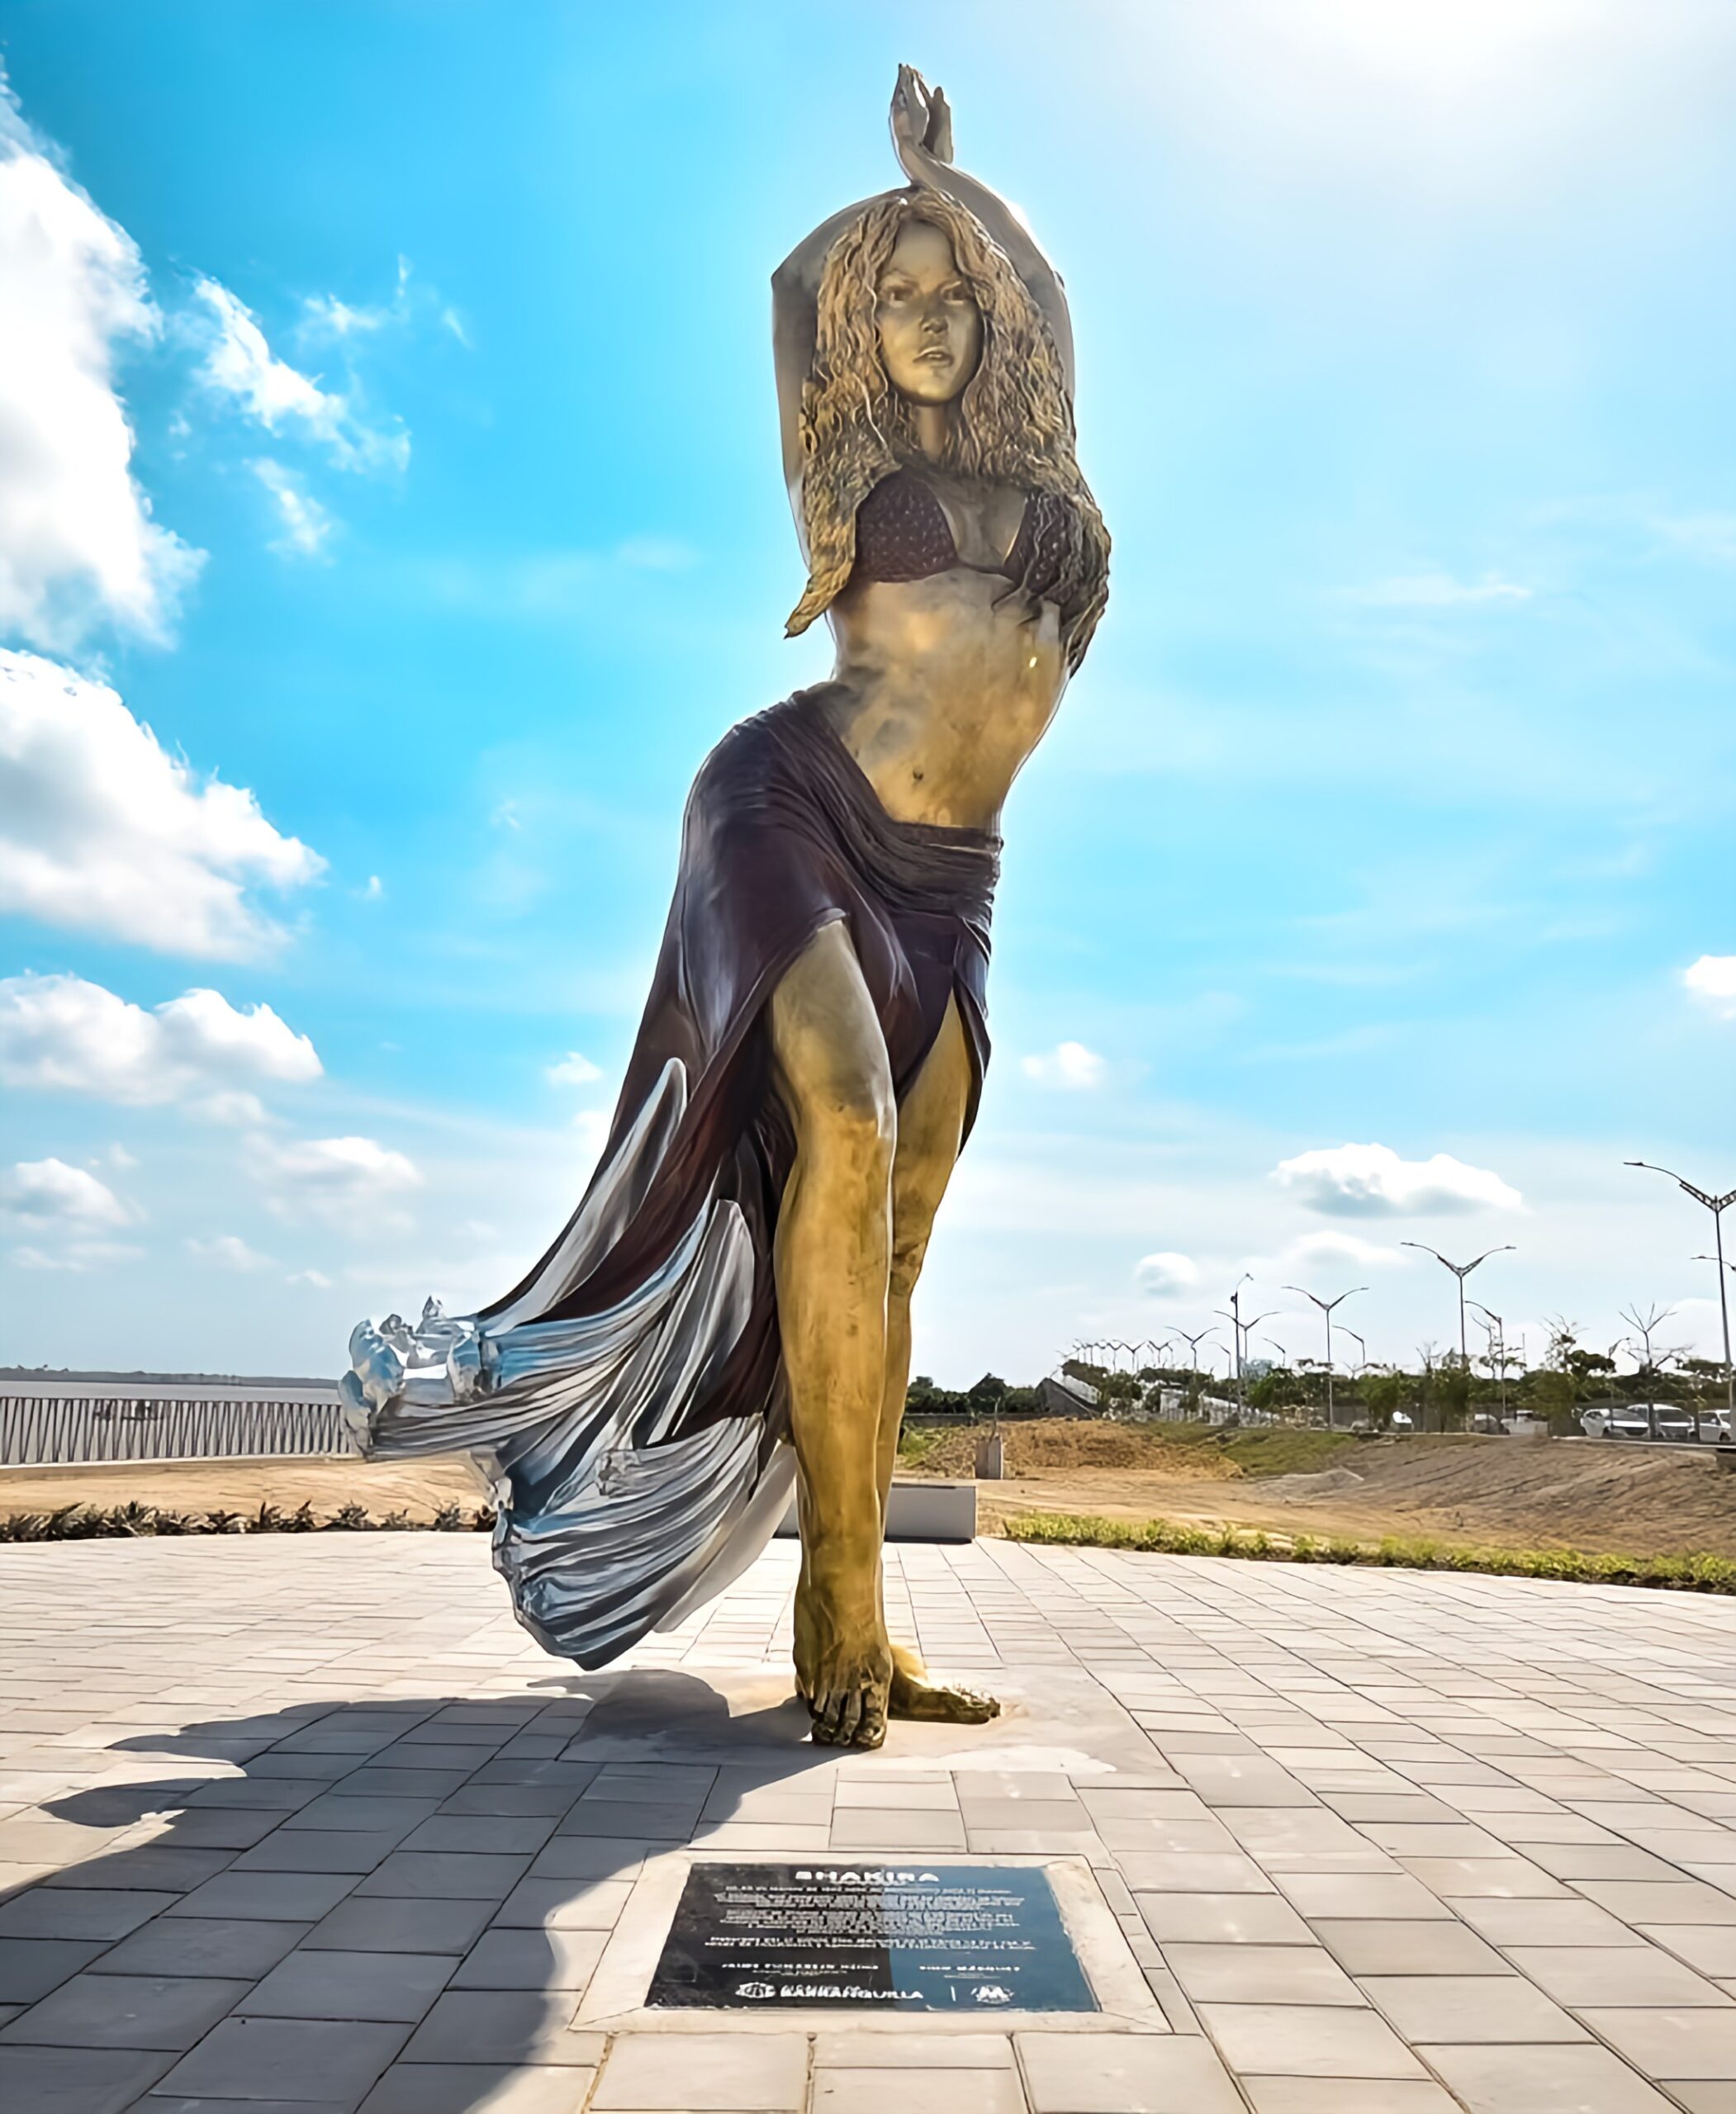 Une statue de 6,5 mètres à l'effigie de Shakira a été inaugurée dans sa ville natale de Barranquilla, en Colombie. - shakira 3 2 scaled